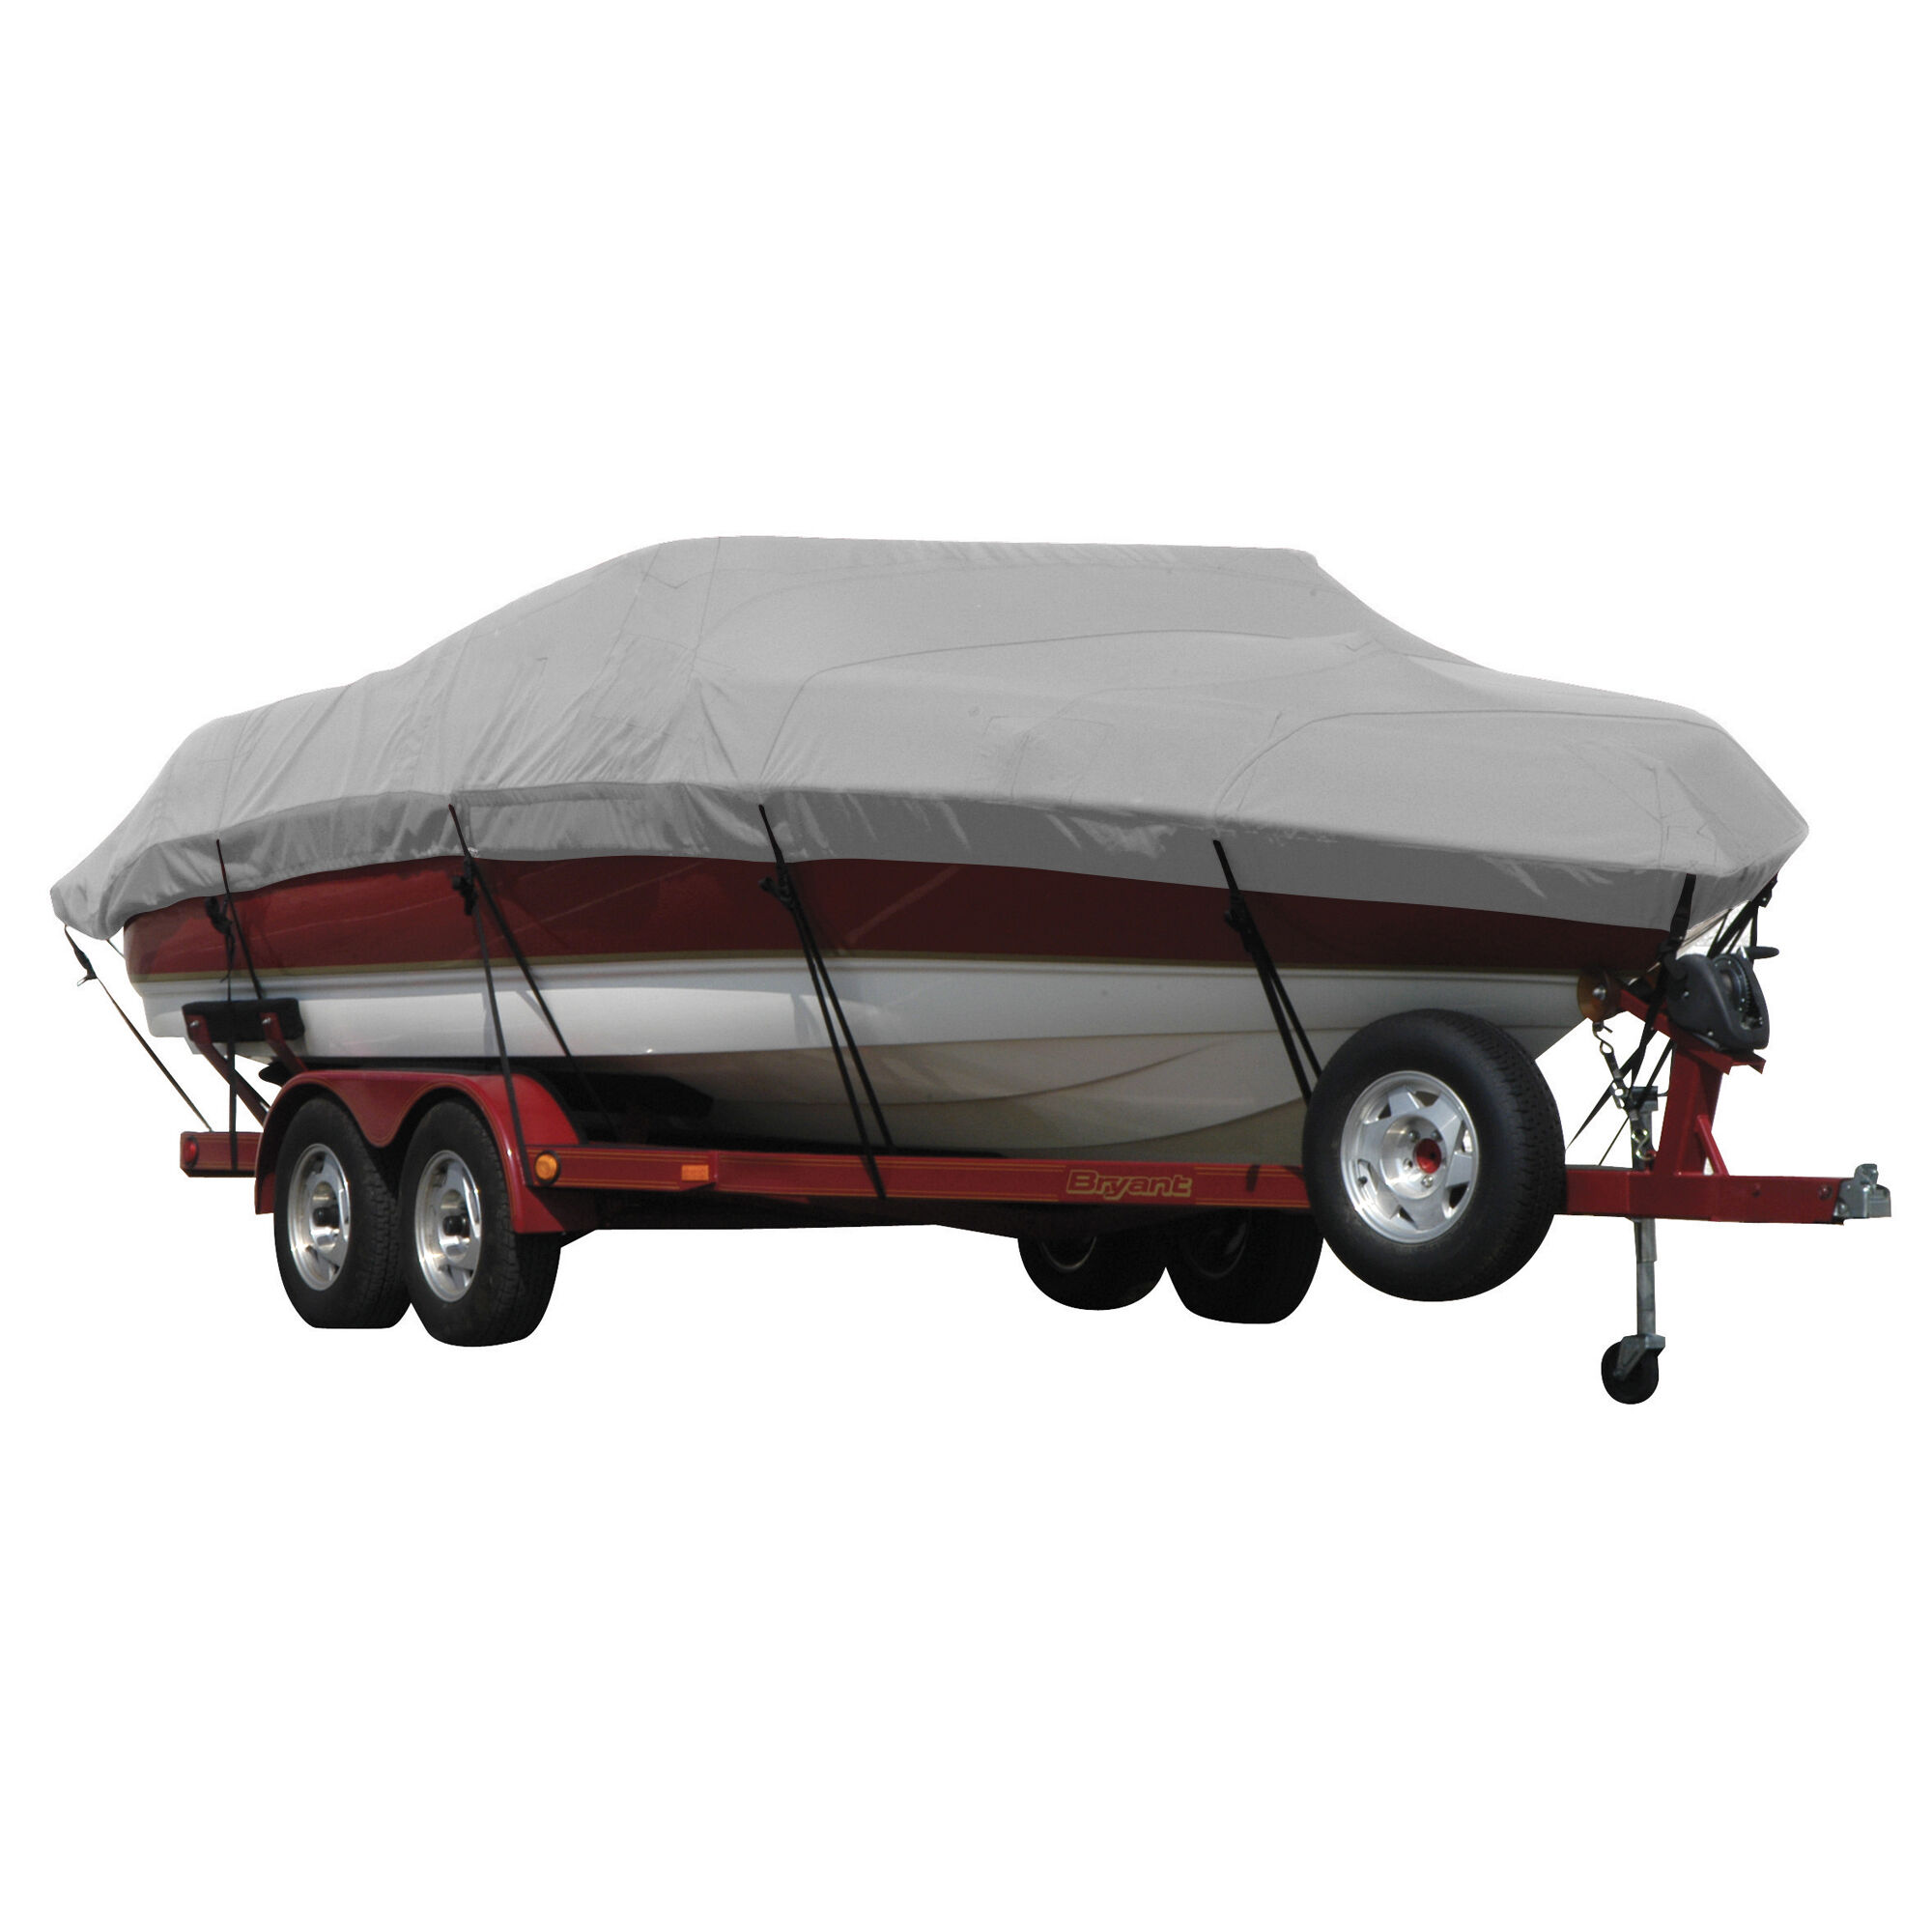 Covermate Exact Fit Sunbrella Boat Cover for Seaswirl Striper 2120 Striper 2120 Cuddy Hard Top No Pulpit I/O. Grey